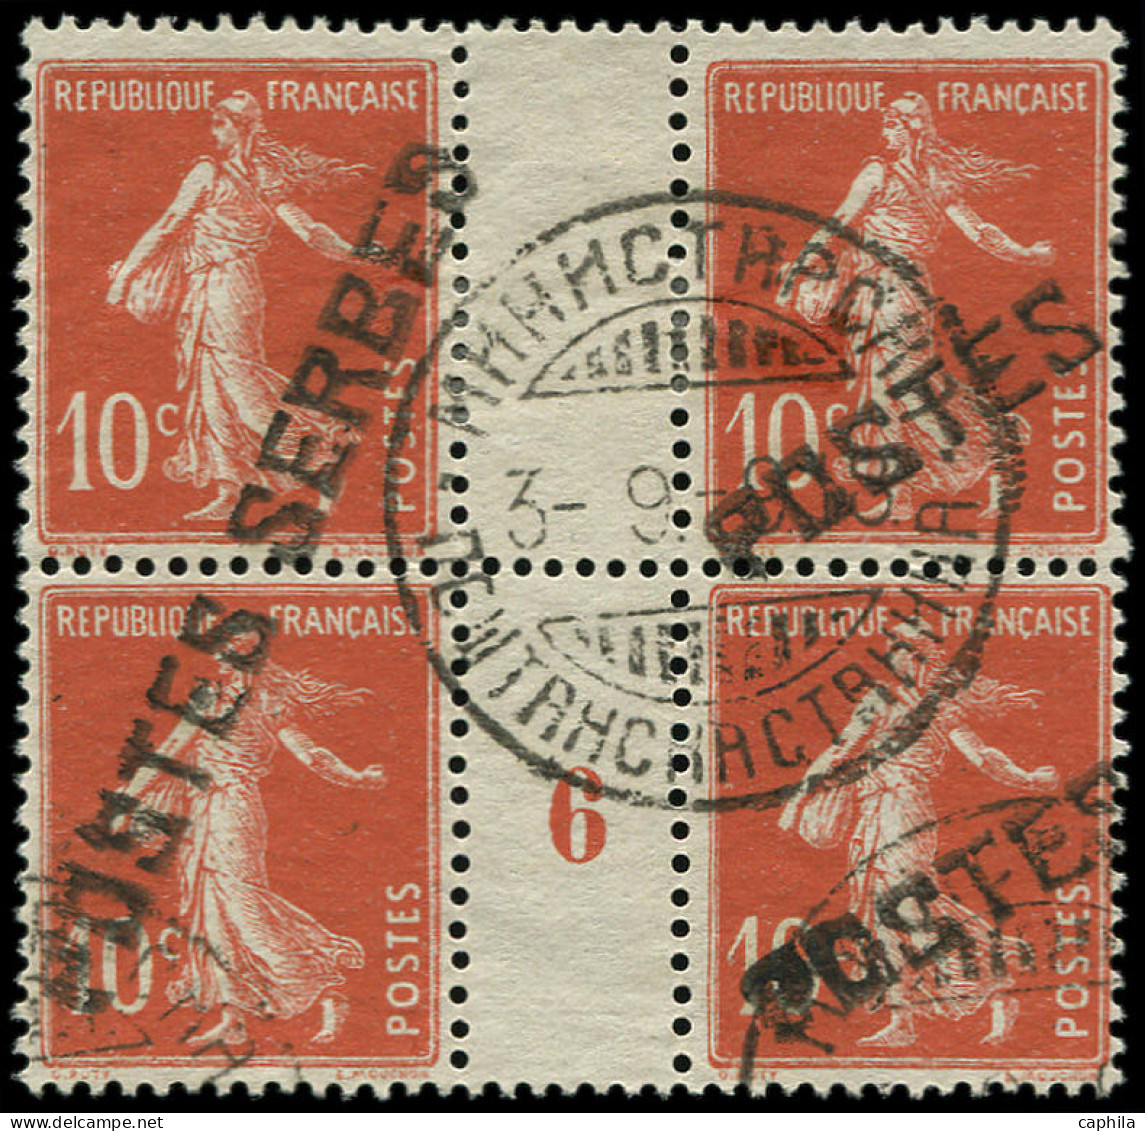 O FRANCE - Postes Serbes - 5, Bloc De 4, Millésime "6", Signé: 10c. Semeuse Rouge - War Stamps